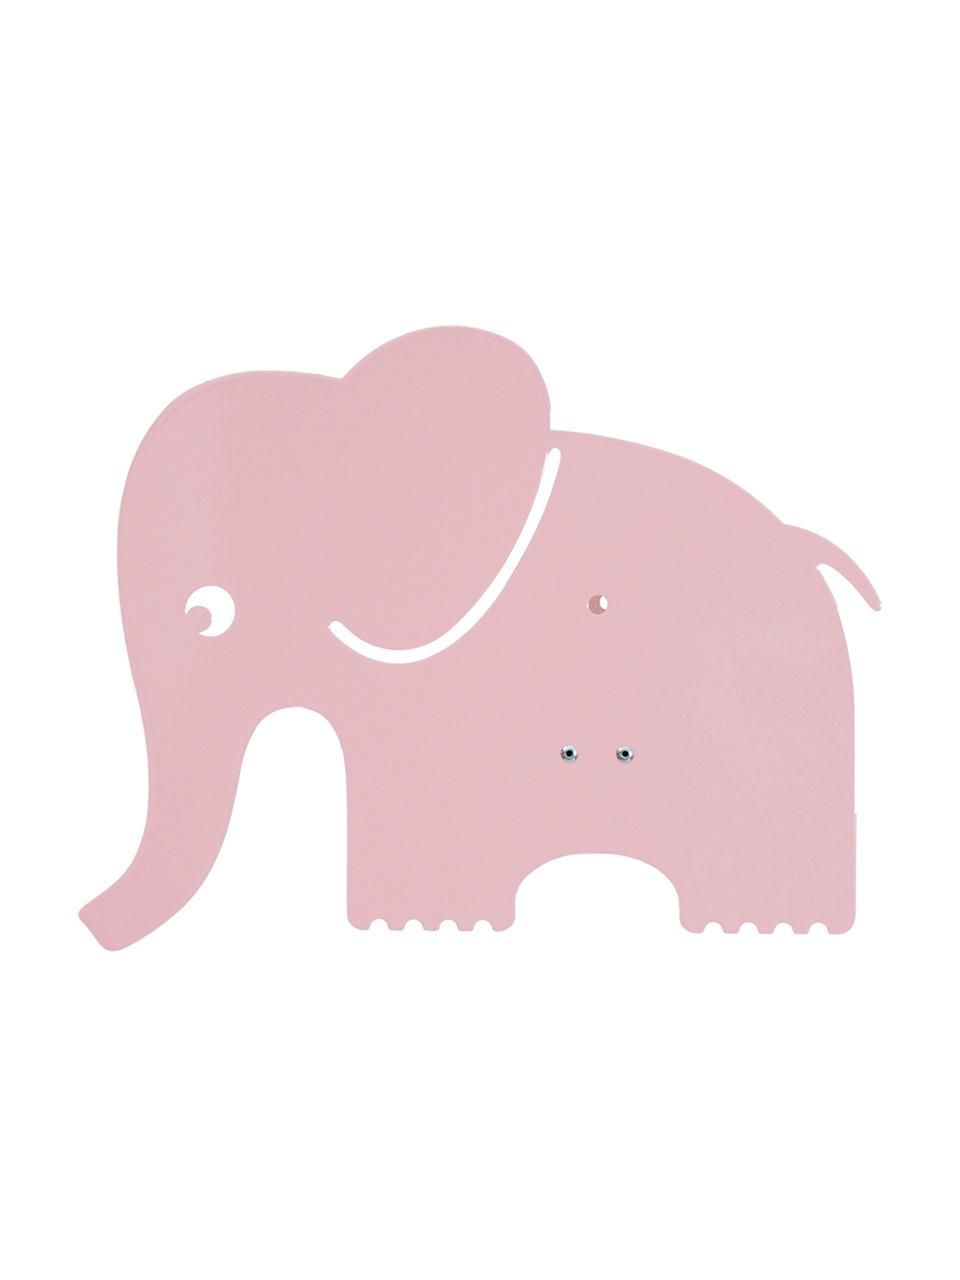 Wandleuchte Elephant mit Stecker, Metall, pulverbeschichtet, Helles Rosa, B 33 x H 29 cm